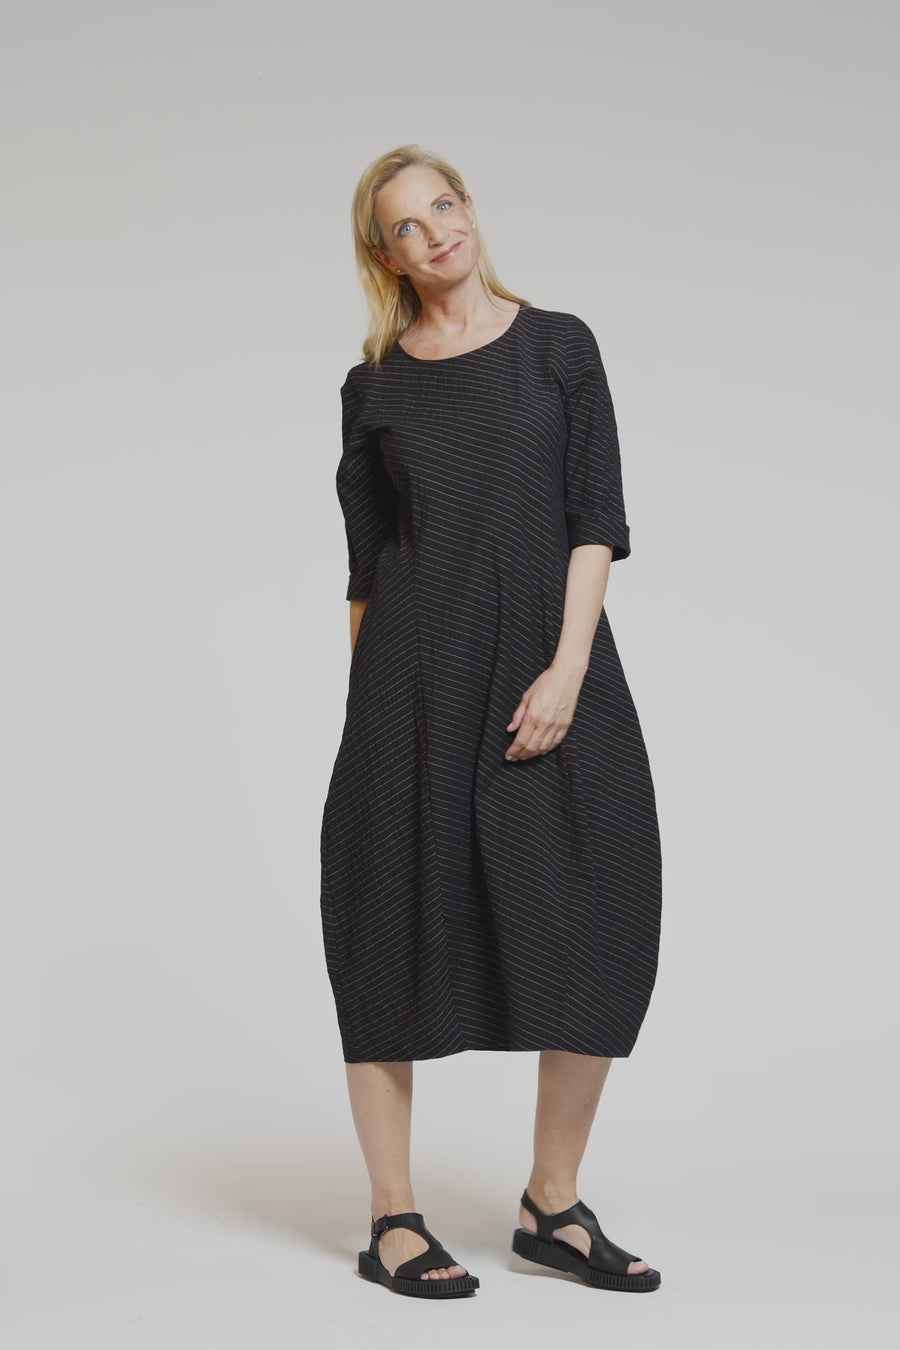 Kleid aus Baumwolle mit 1% Nylon und 1% Elasthan (325k1) gestreift oder unifarben